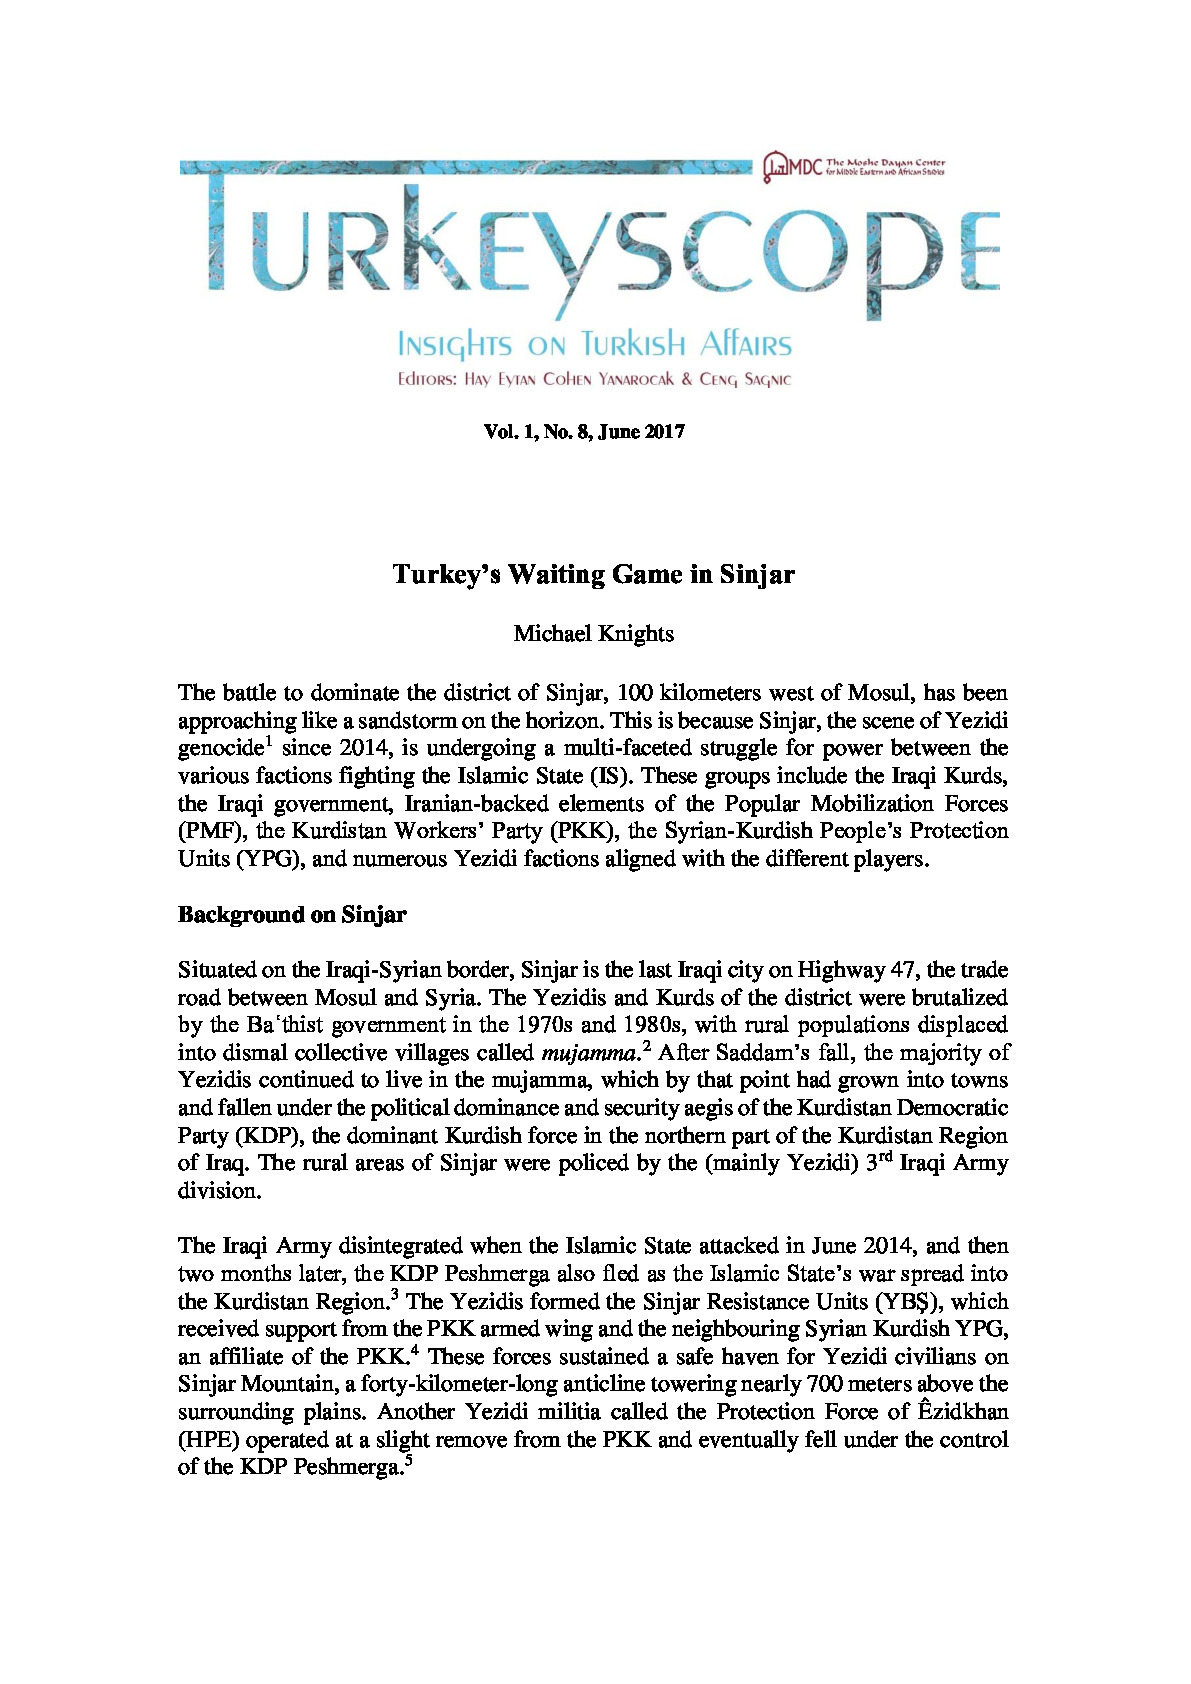 Knights20170622-Turkeyscope.pdf